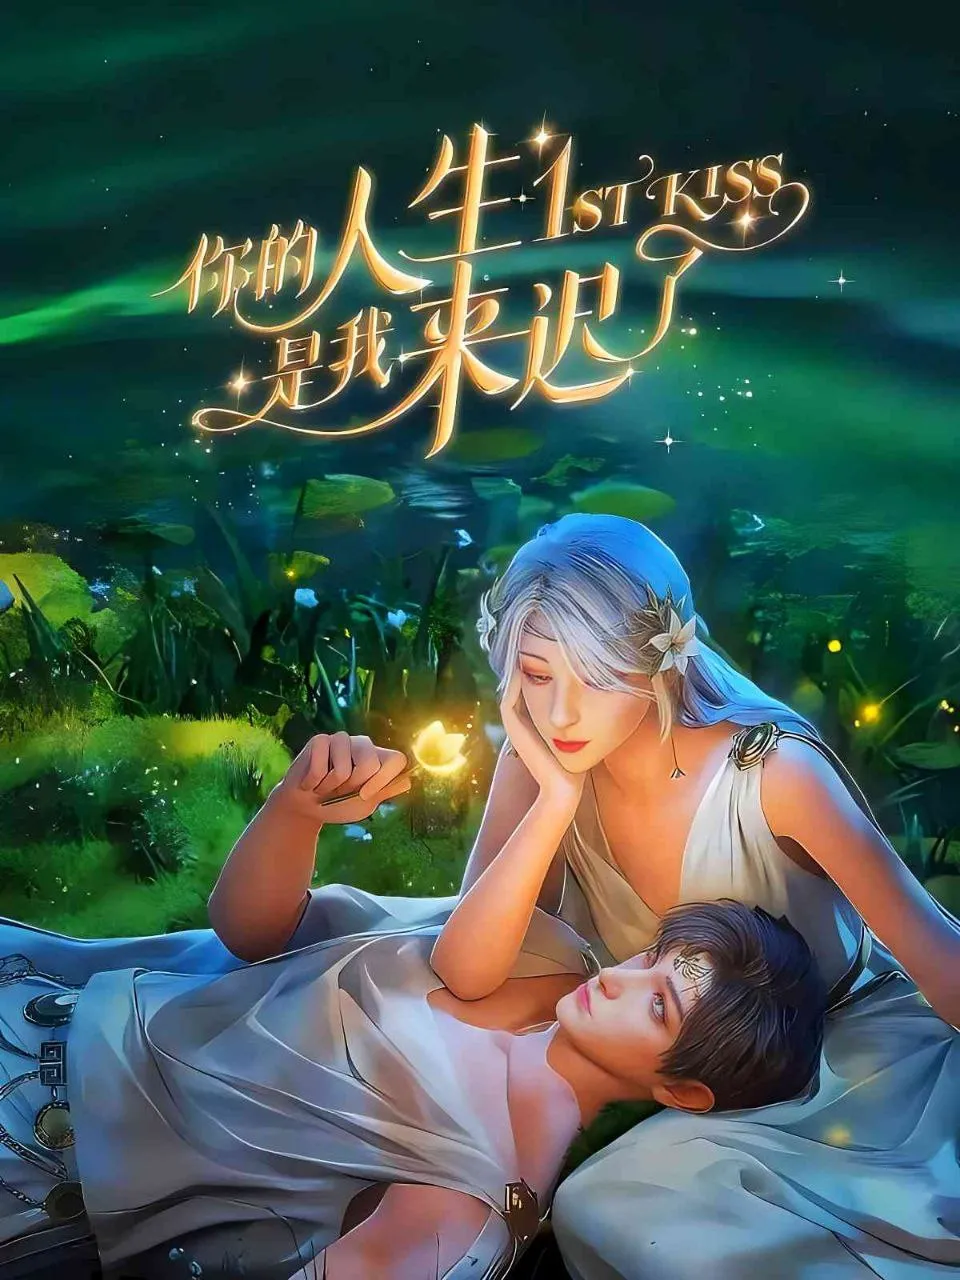 1st Kiss [Ni De Rensheng Shi Wo Lai Chi Le] Episode 16 English Sub